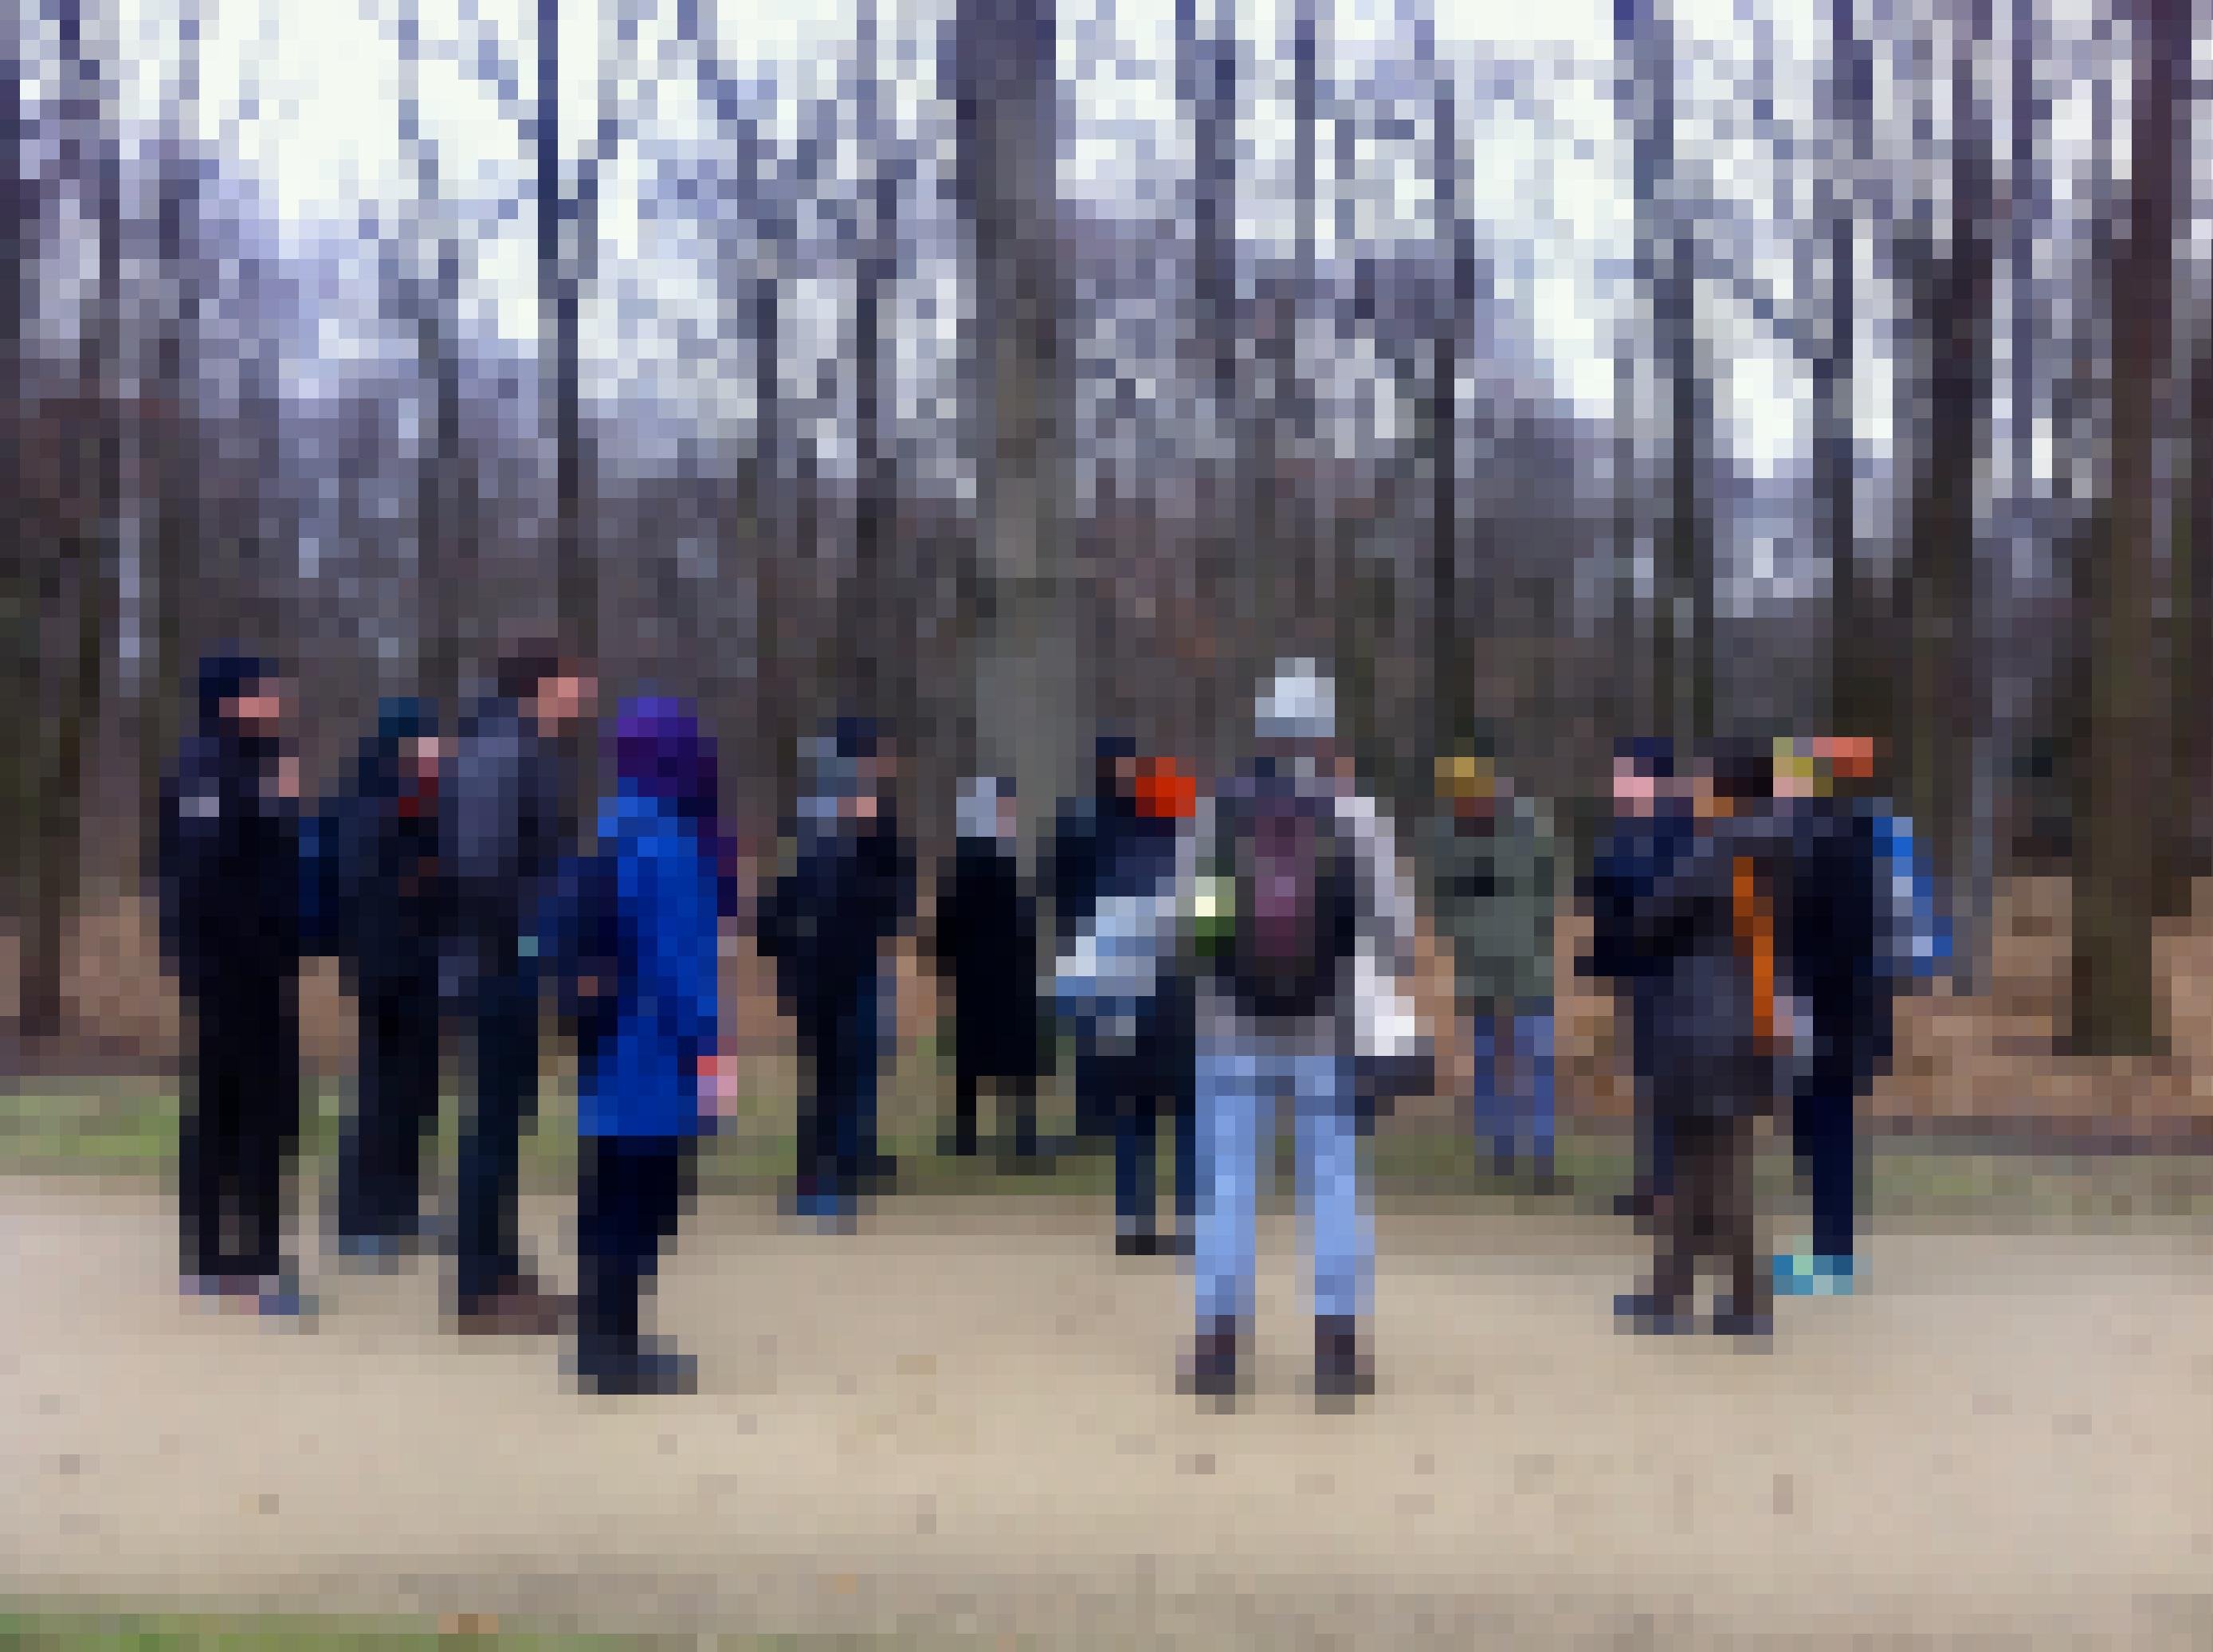 Eine Gruppe Menschen steht auf einem Weg in einem Wald.